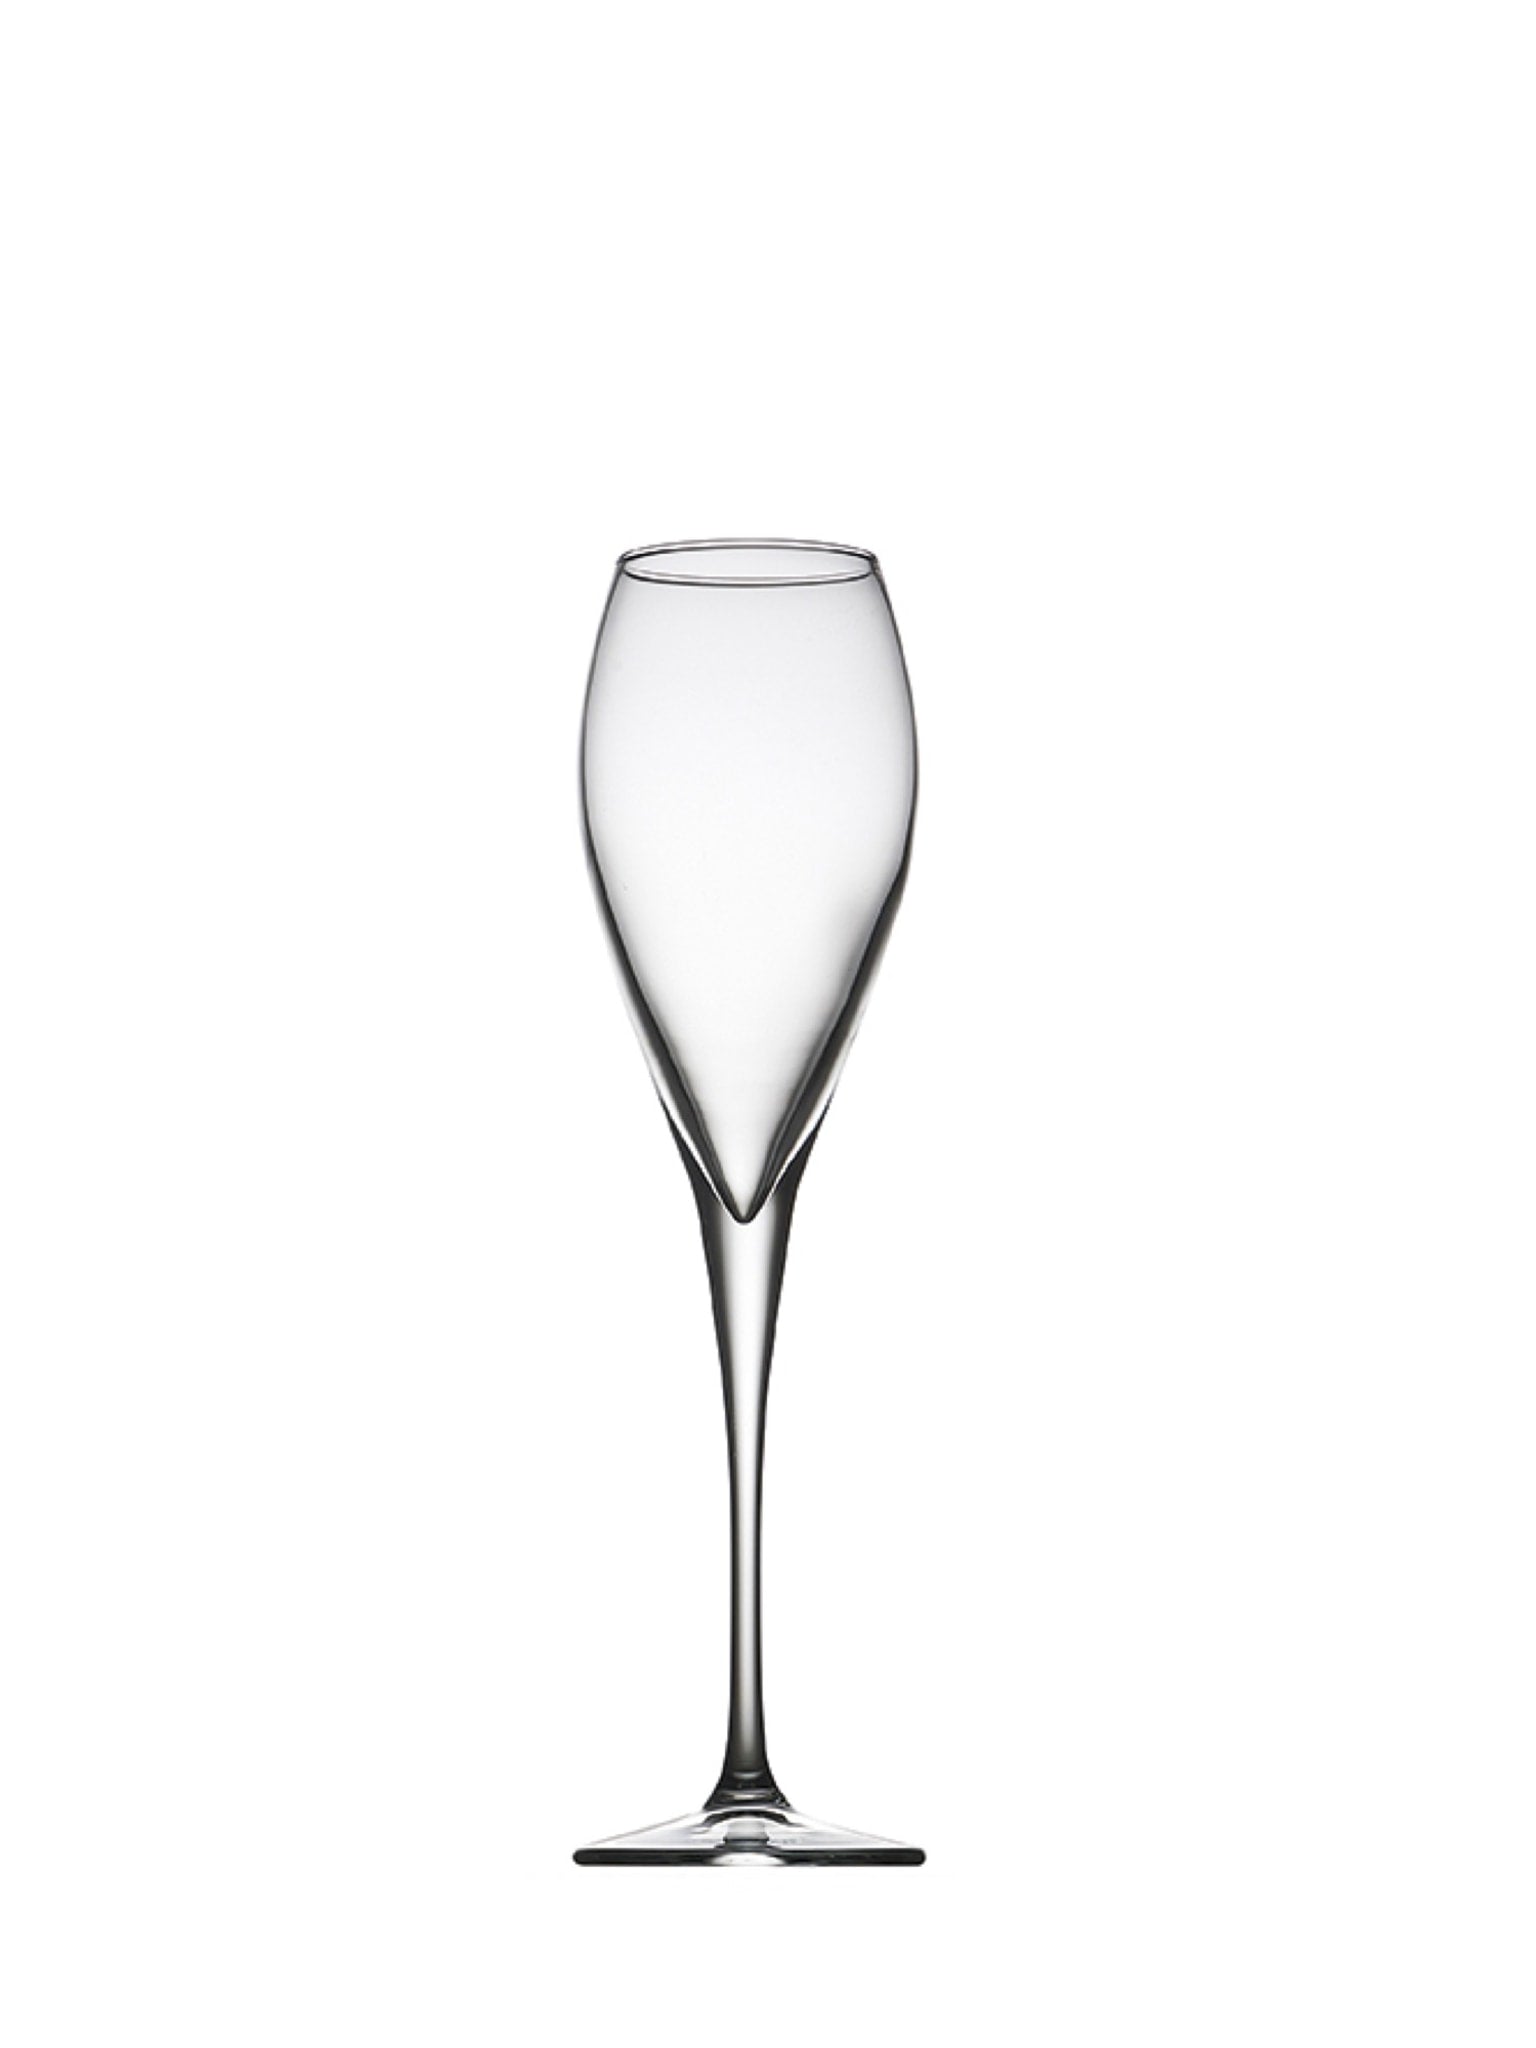 Elegant sæt med seks champagneglas fra Monte Carlo-serien